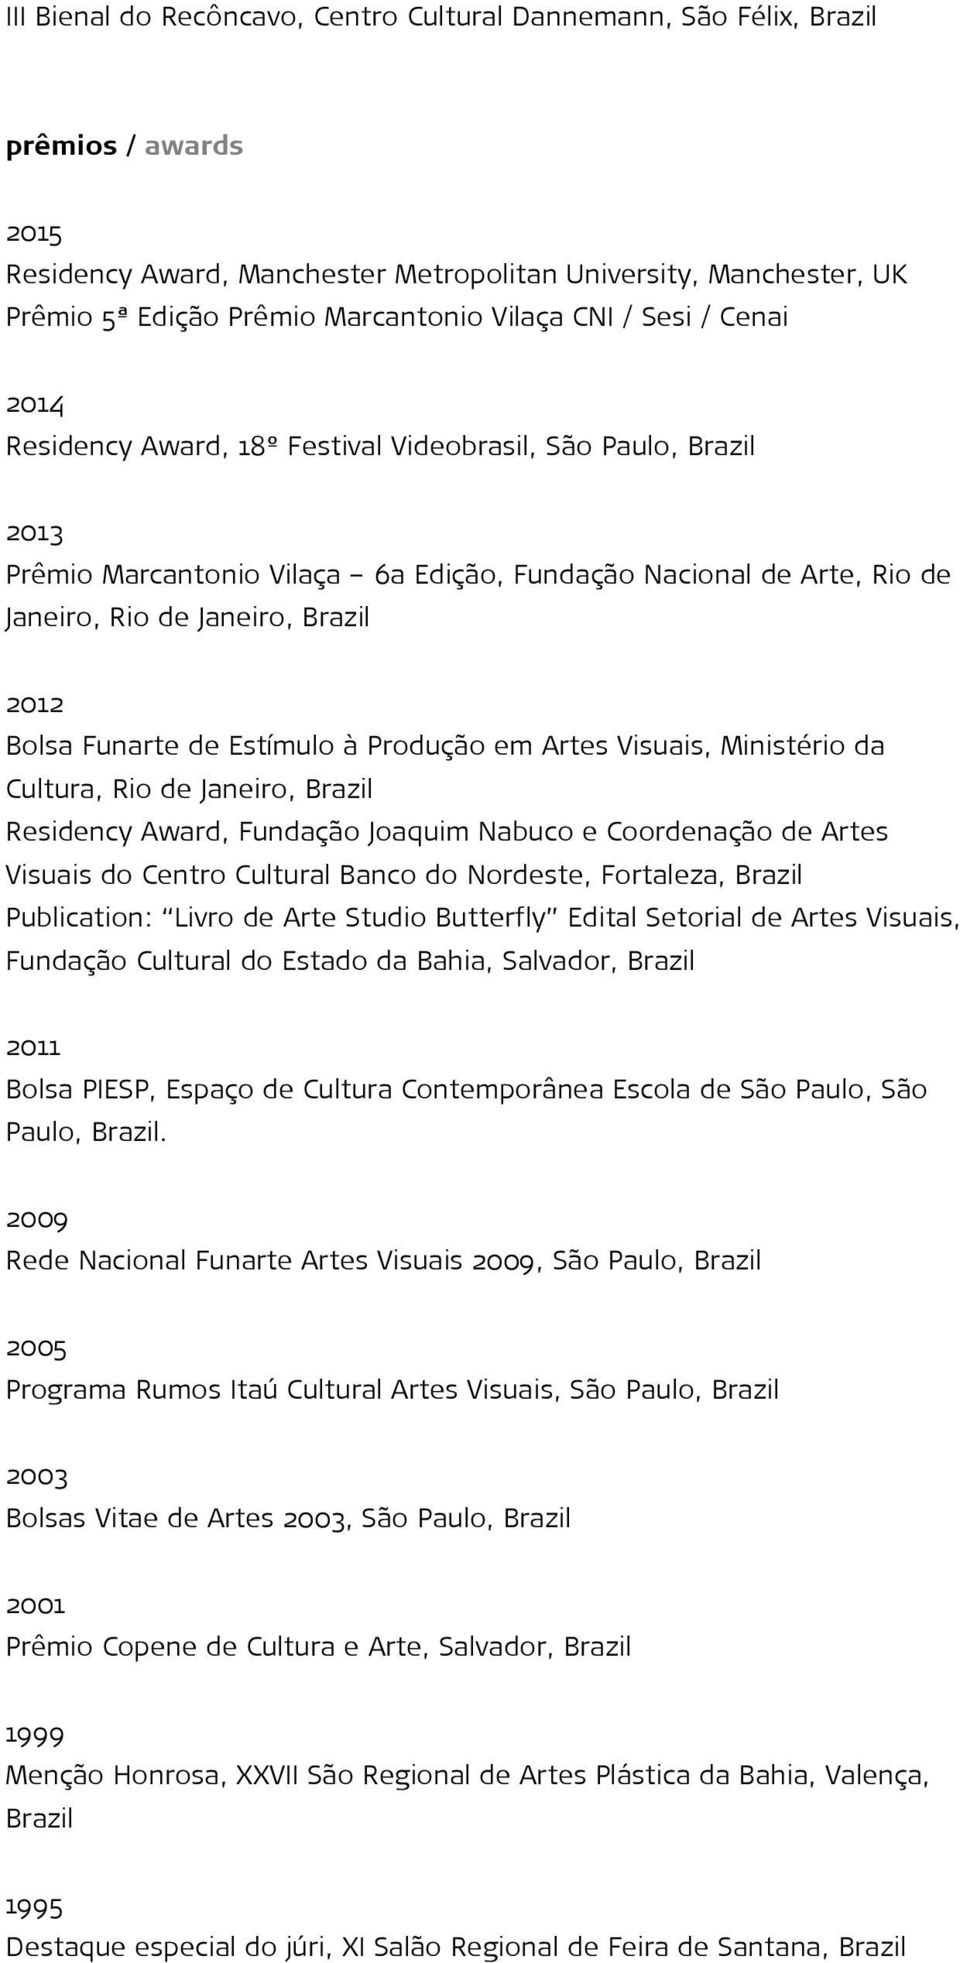 Estímulo à Produção em Artes Visuais, Ministério da Cultura, Rio de Janeiro, Residency Award, Fundação Joaquim Nabuco e Coordenação de Artes Visuais do Centro Cultural Banco do Nordeste, Fortaleza,